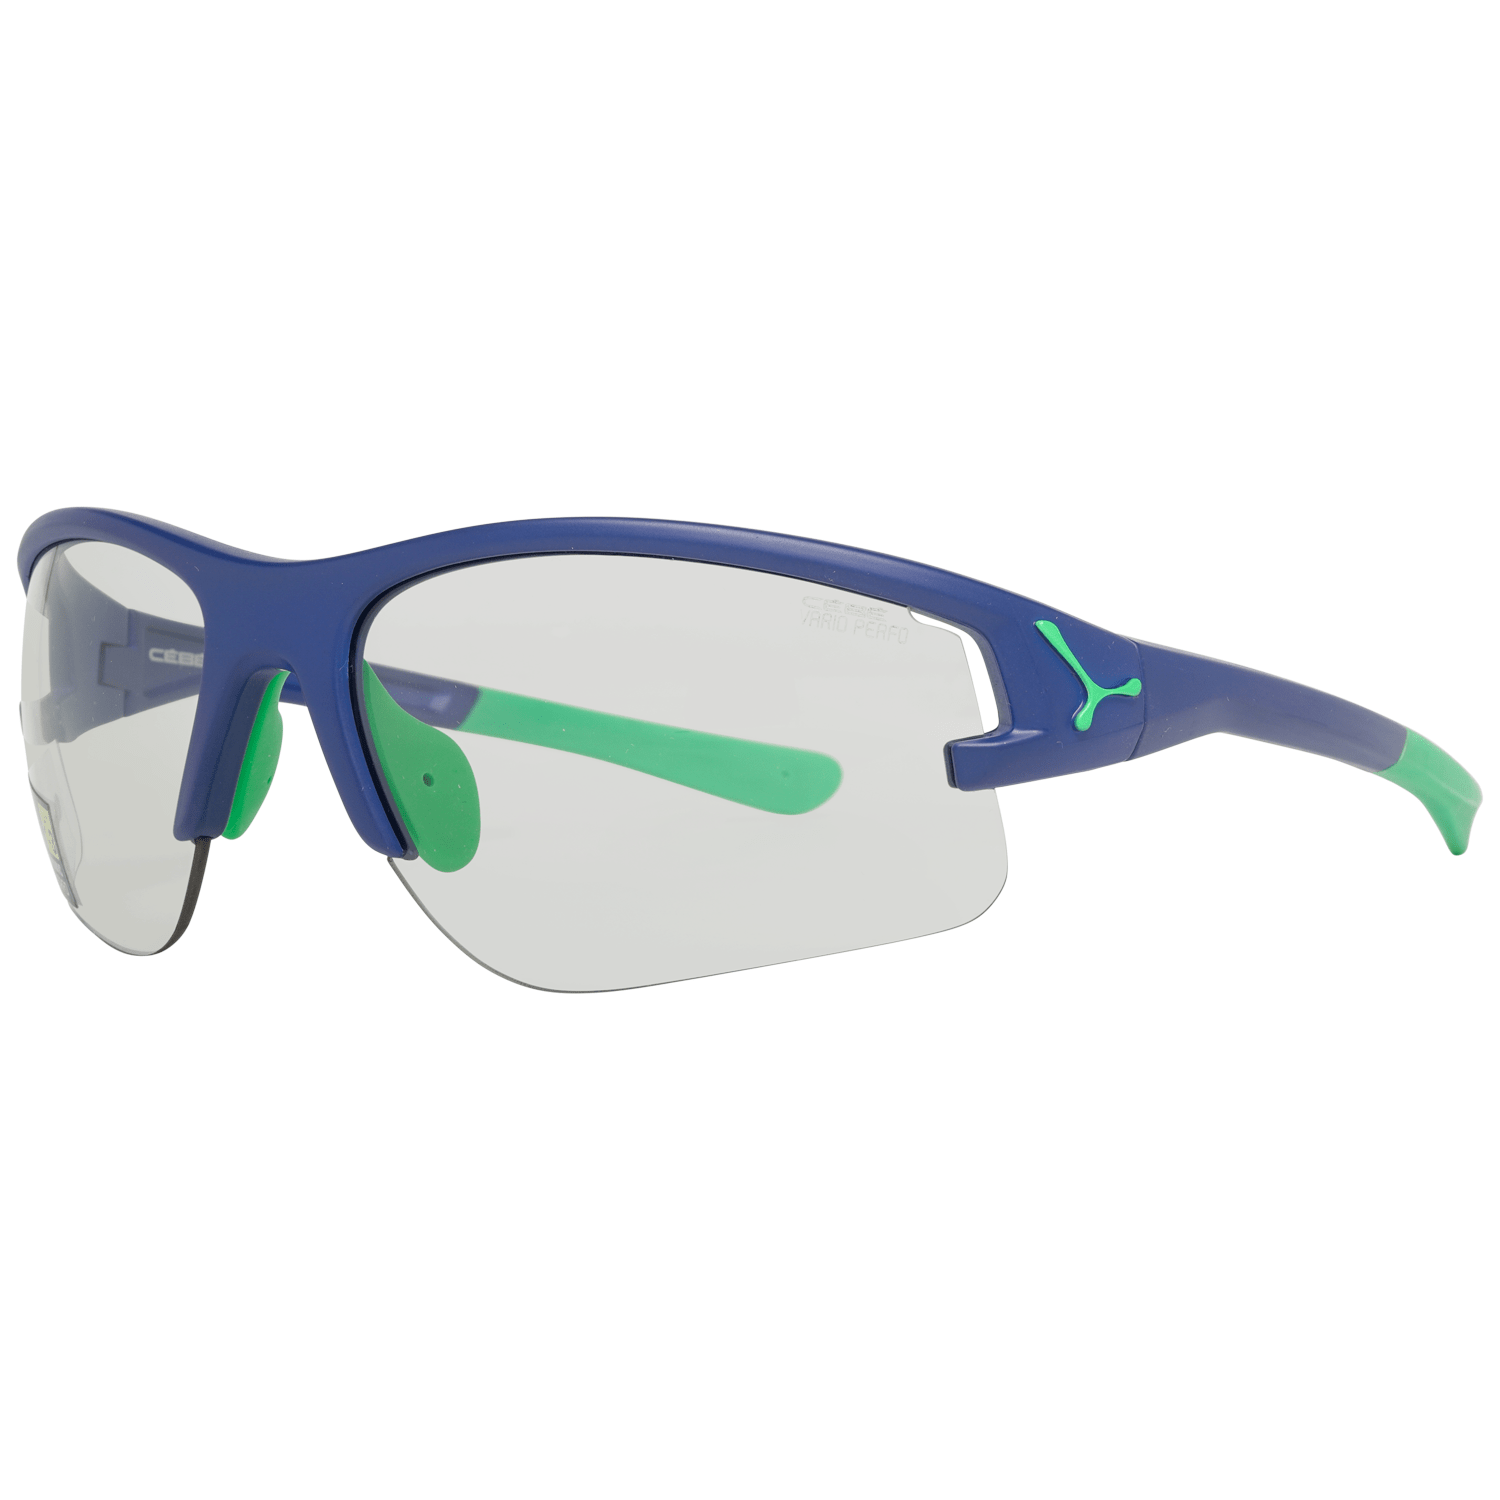 Cébé Men's Sunglasses Blue CBACROS8